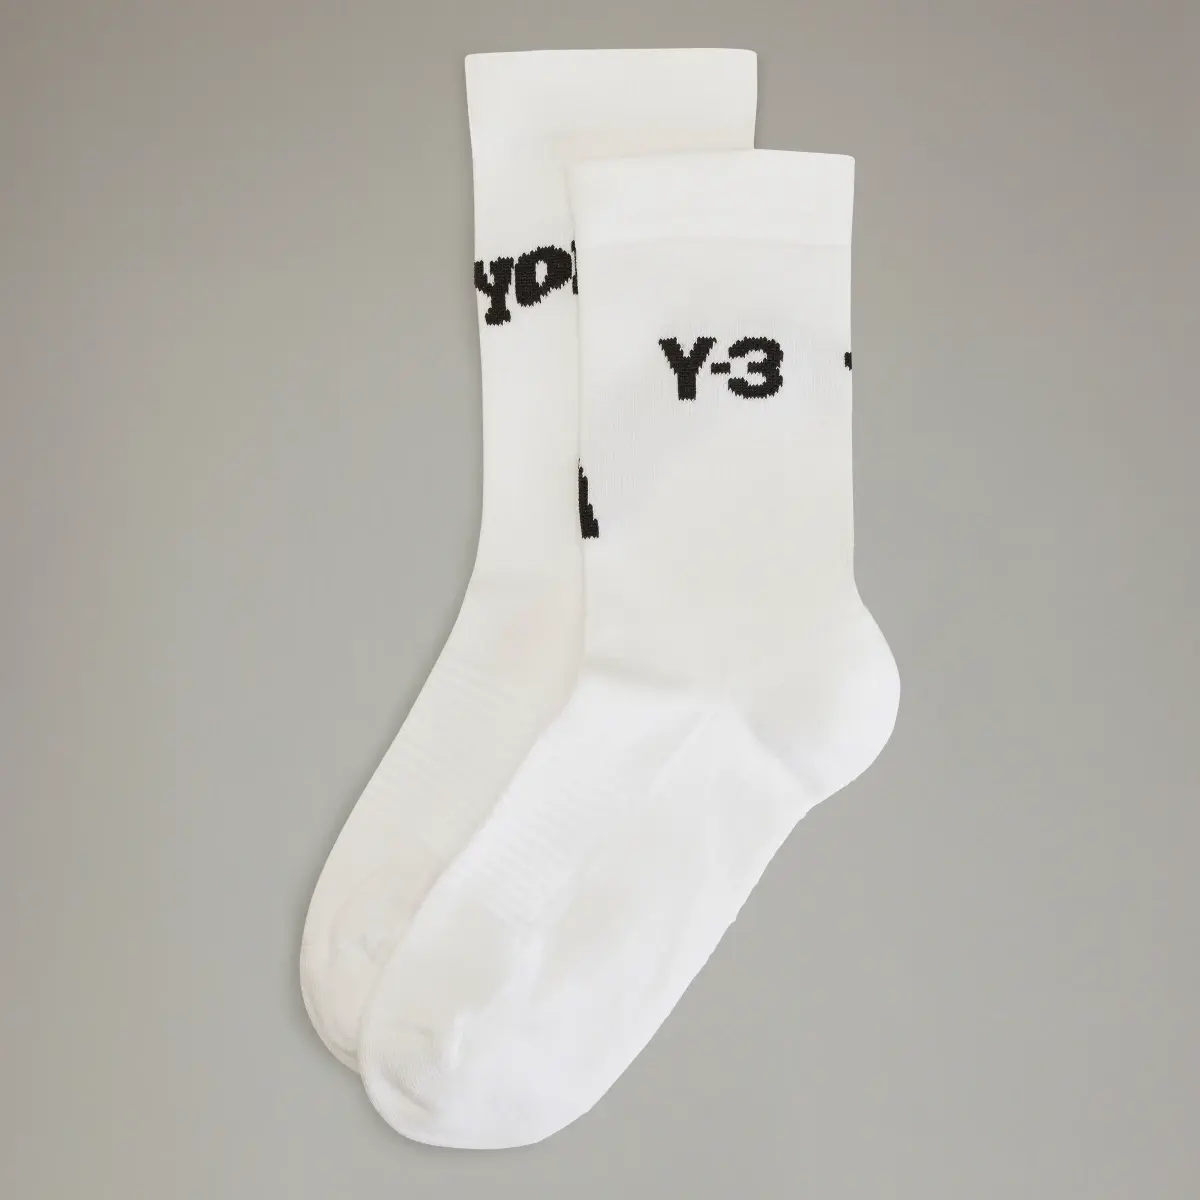 Adidas Y-3 Crew Socken. 1